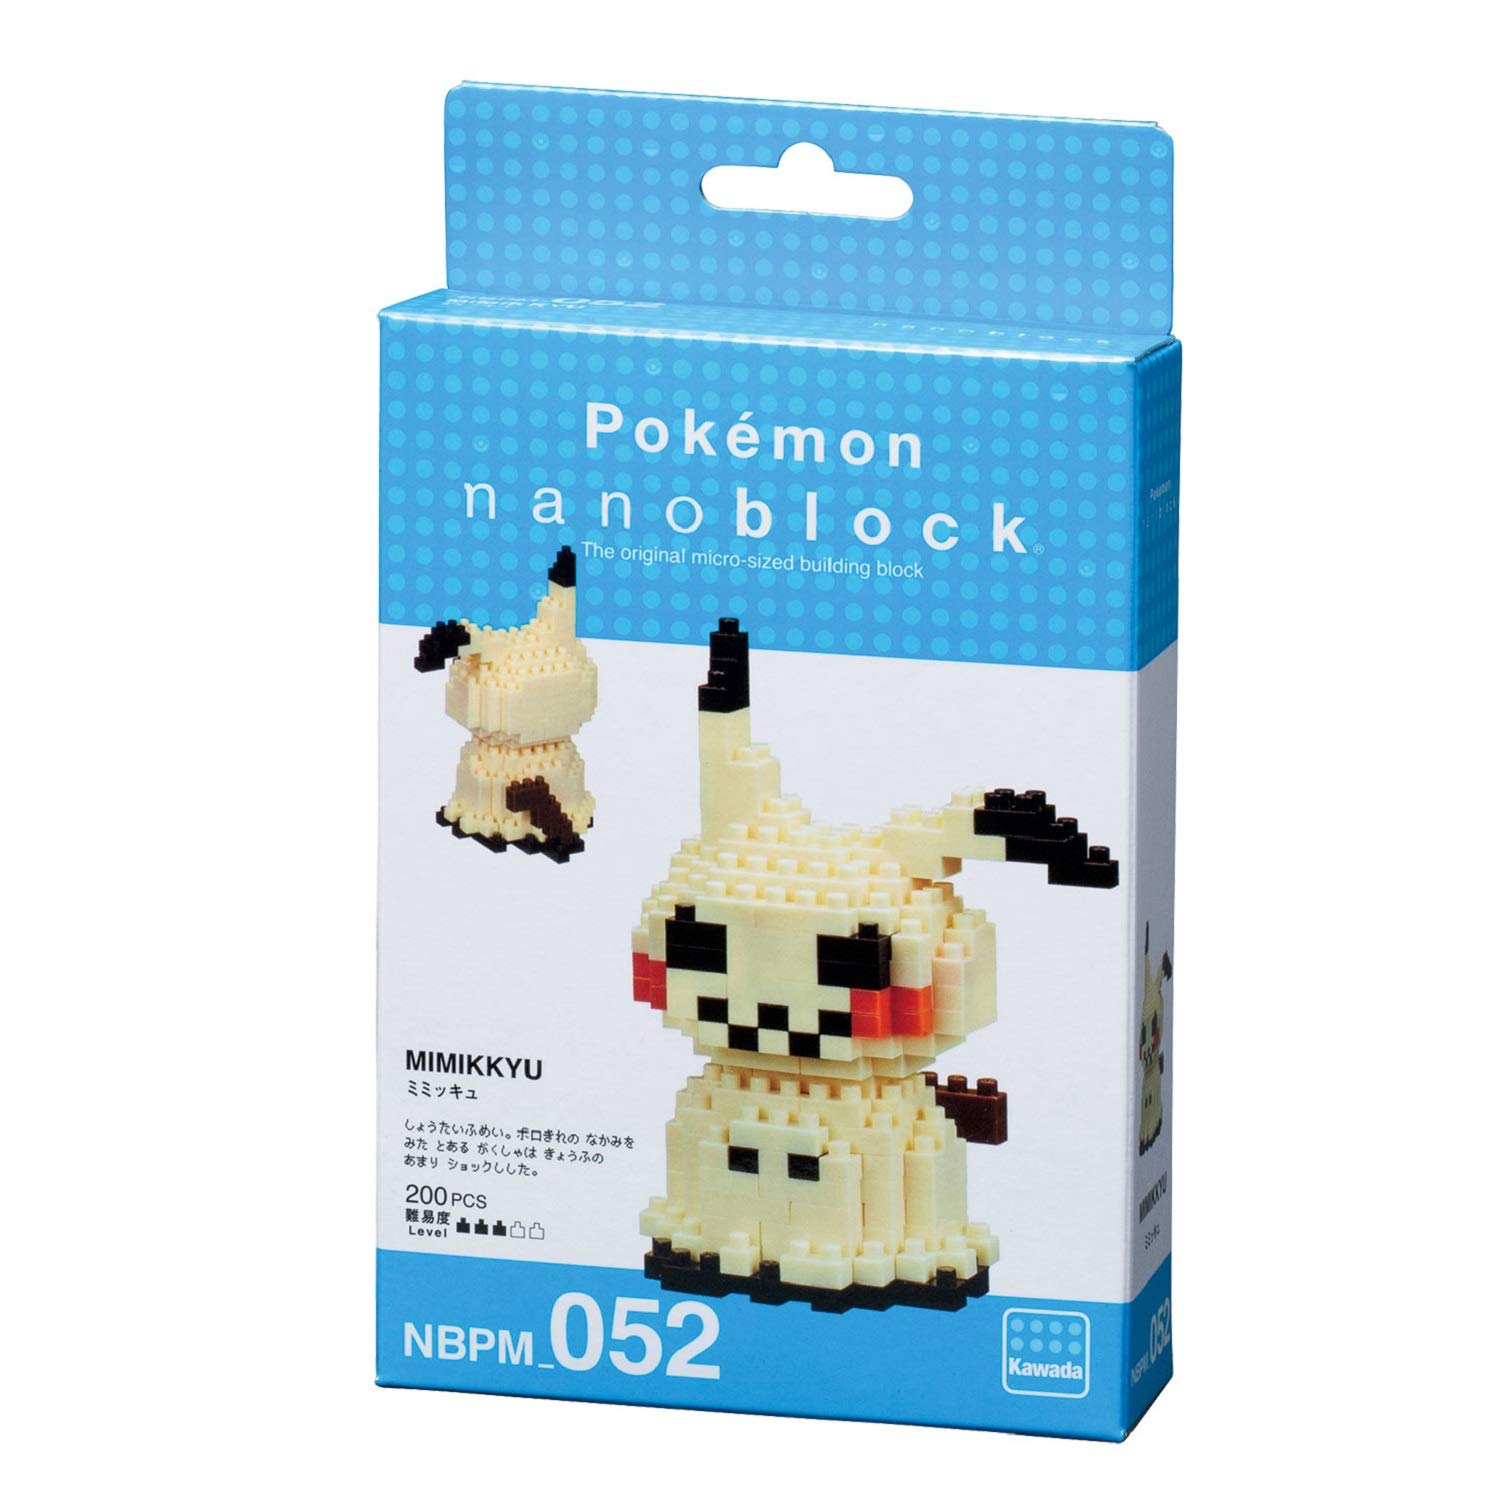 nanoblock - Mimikyu [Pokémon], Pokémon Series Building Kit (NBPM052)